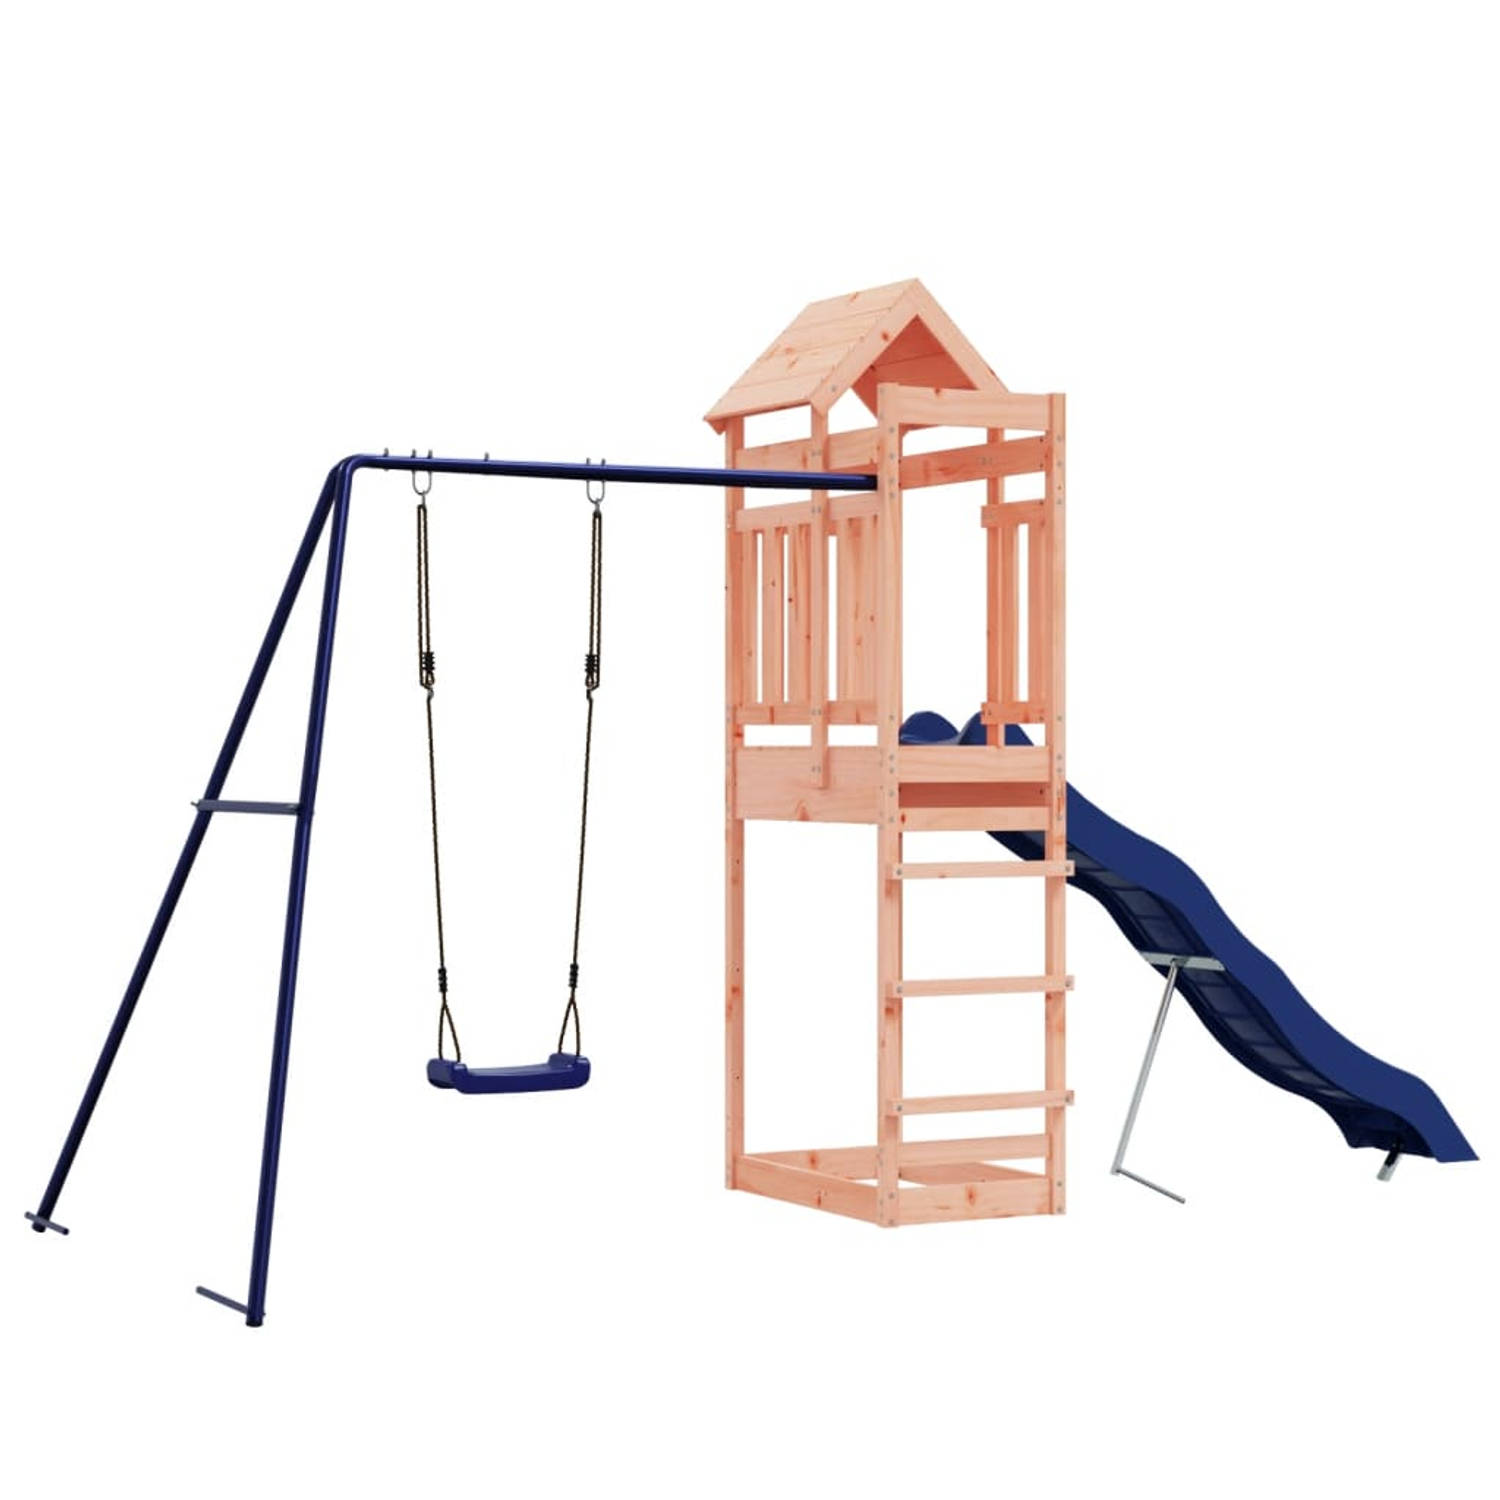 The Living Store Speeltoren - houten kinderspeelset - 422 x 185 x 238 cm - douglashout - stabiel frame - multi-activiteitencentra - veilig ontwerp - eindeloos plezier - 3-8 jaar -